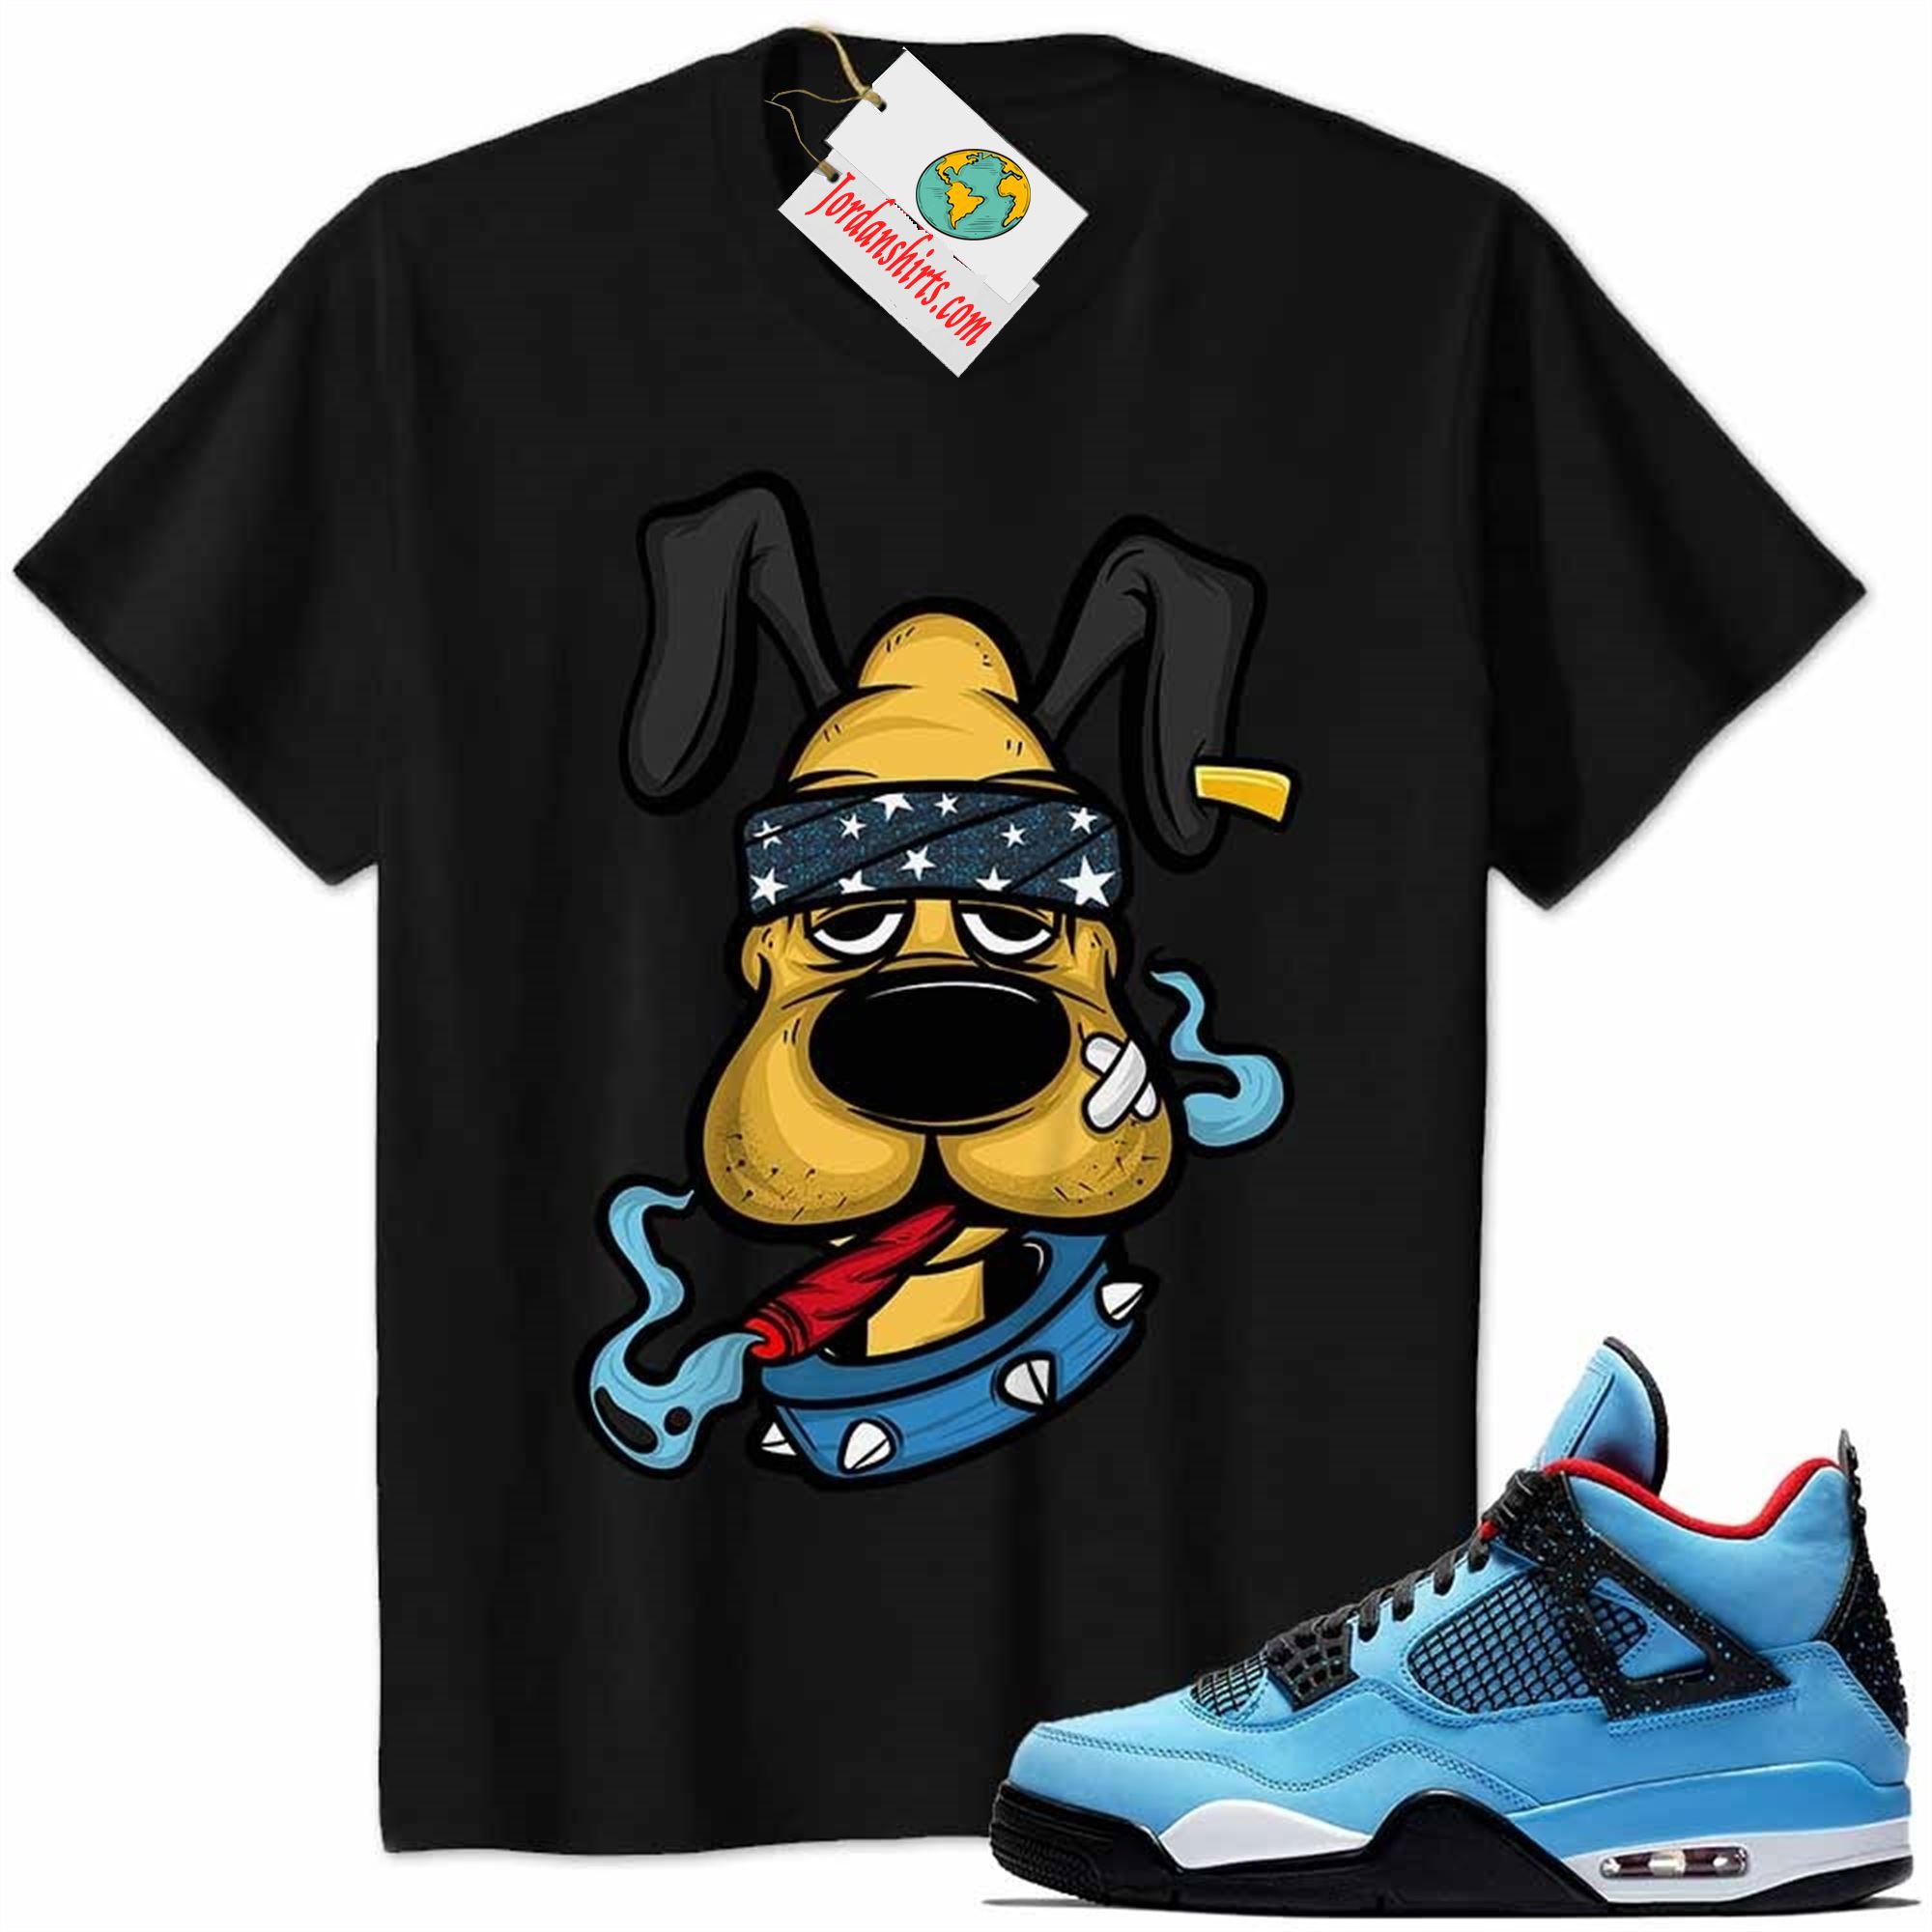 Jordan 4 Shirt, Gangster Pluto Smoke Weed Black Air Jordan 4 Cactus Jack Travis Scott 4s Size Up To 5xl